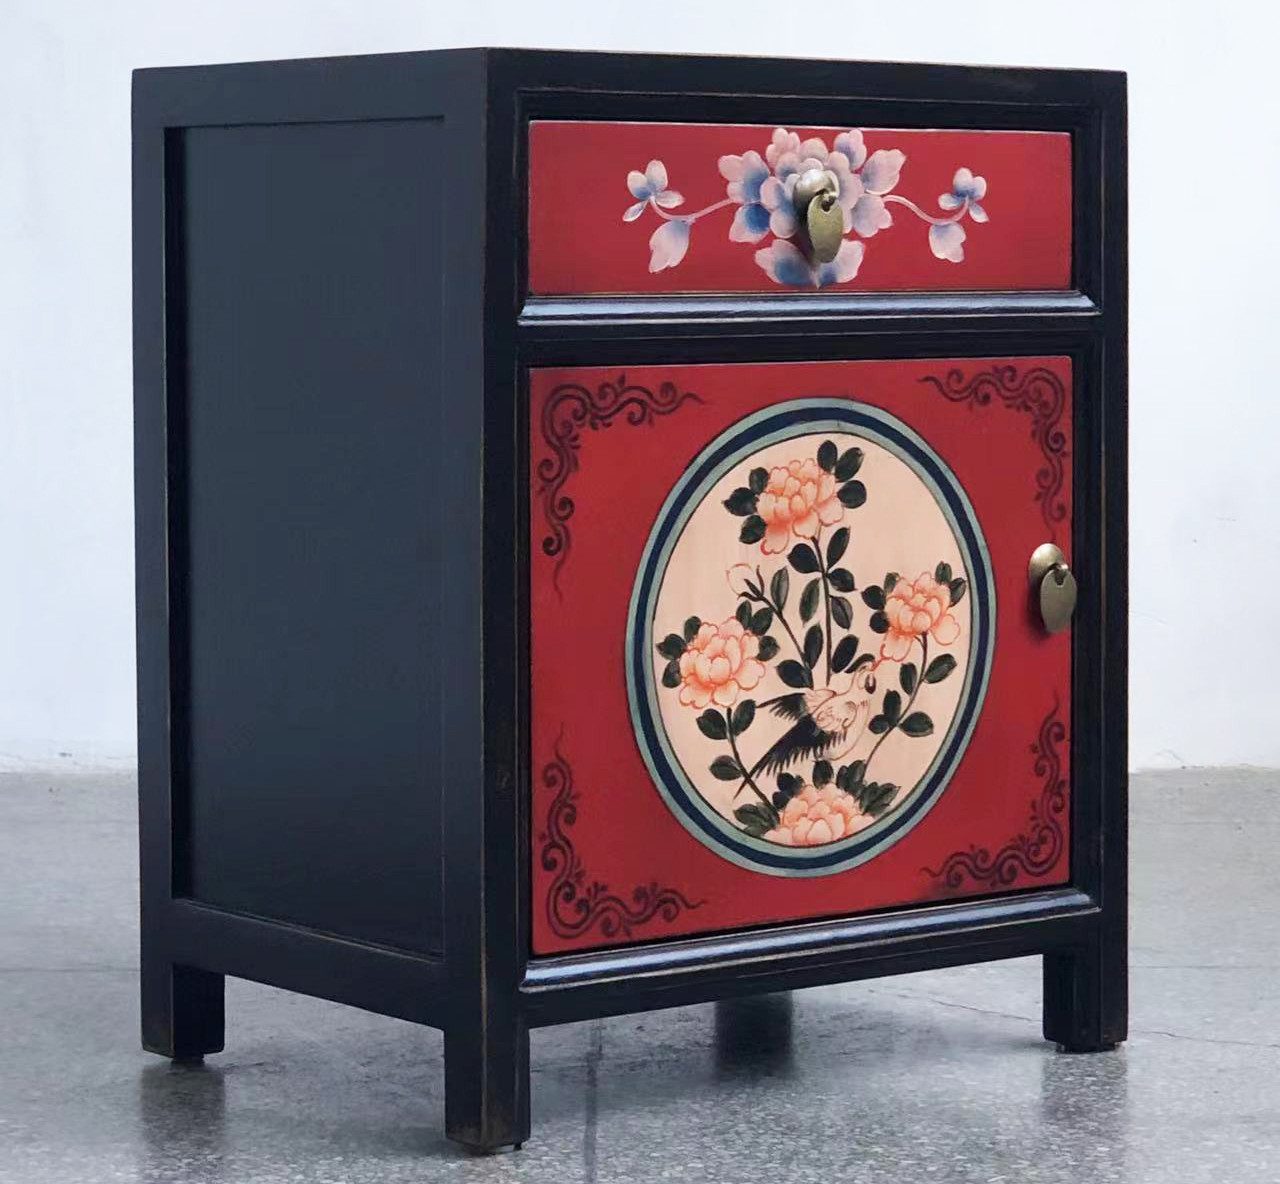 OPIUM OUTLET Nachtkommode Kommode Nachtschrank Nachtkästchen orientalisch asiatisch chinesisch, Vintage-Stil, Schrank klein, rot-schwarz, komplett montiert, Nachttisch